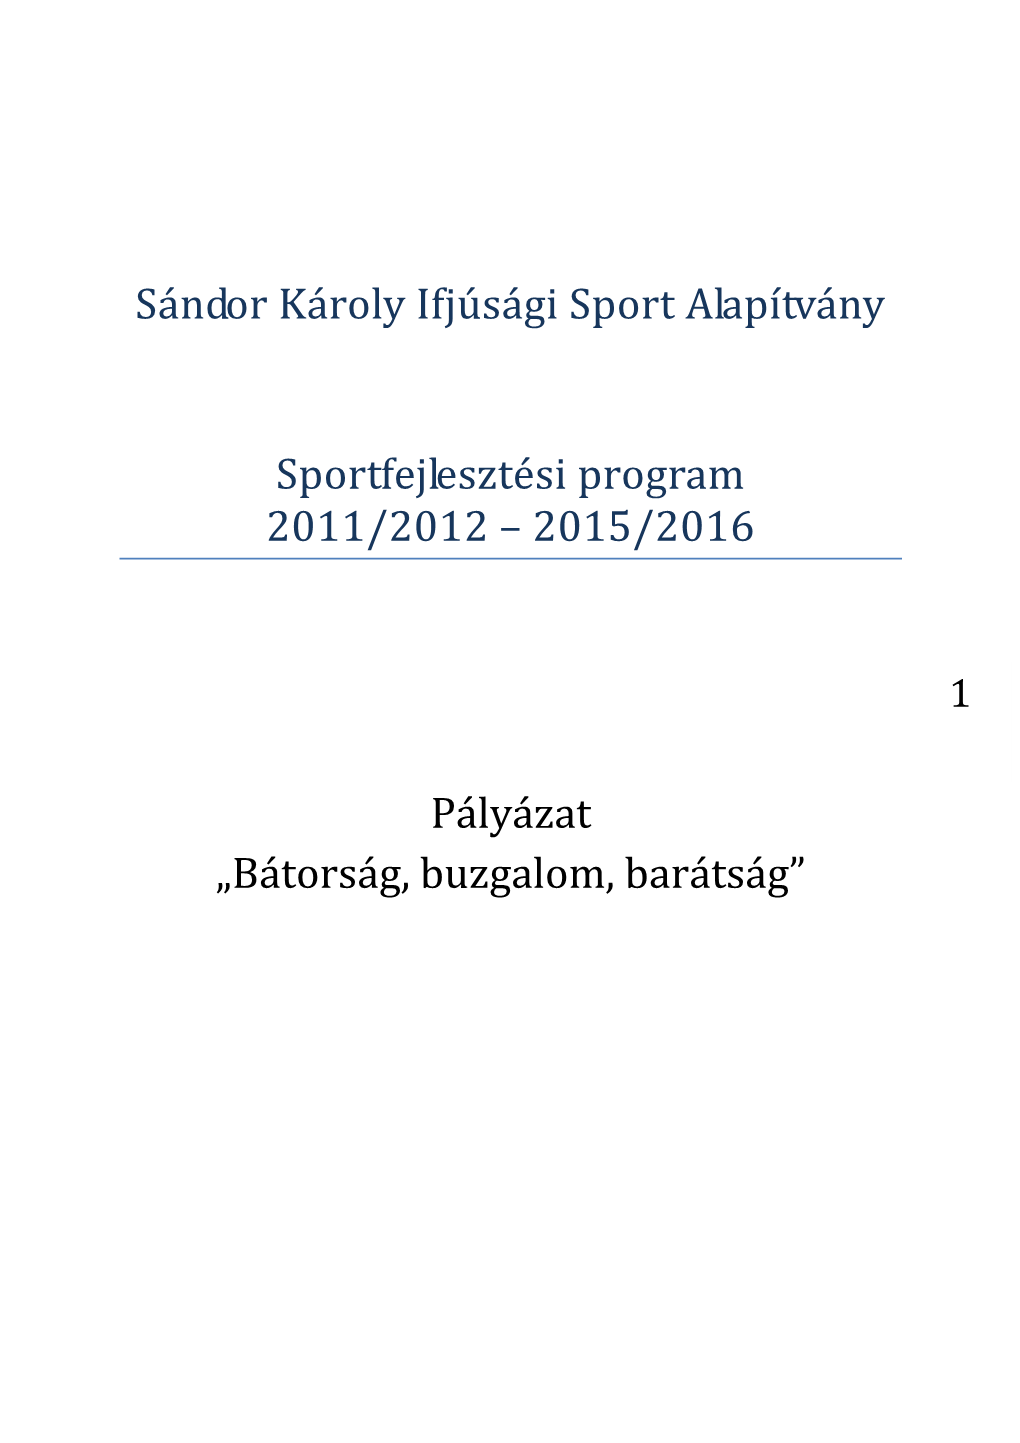 Sándor Károly Ifjúsági Sport Alapítvány Sportfejlesztési Program 2011/2012